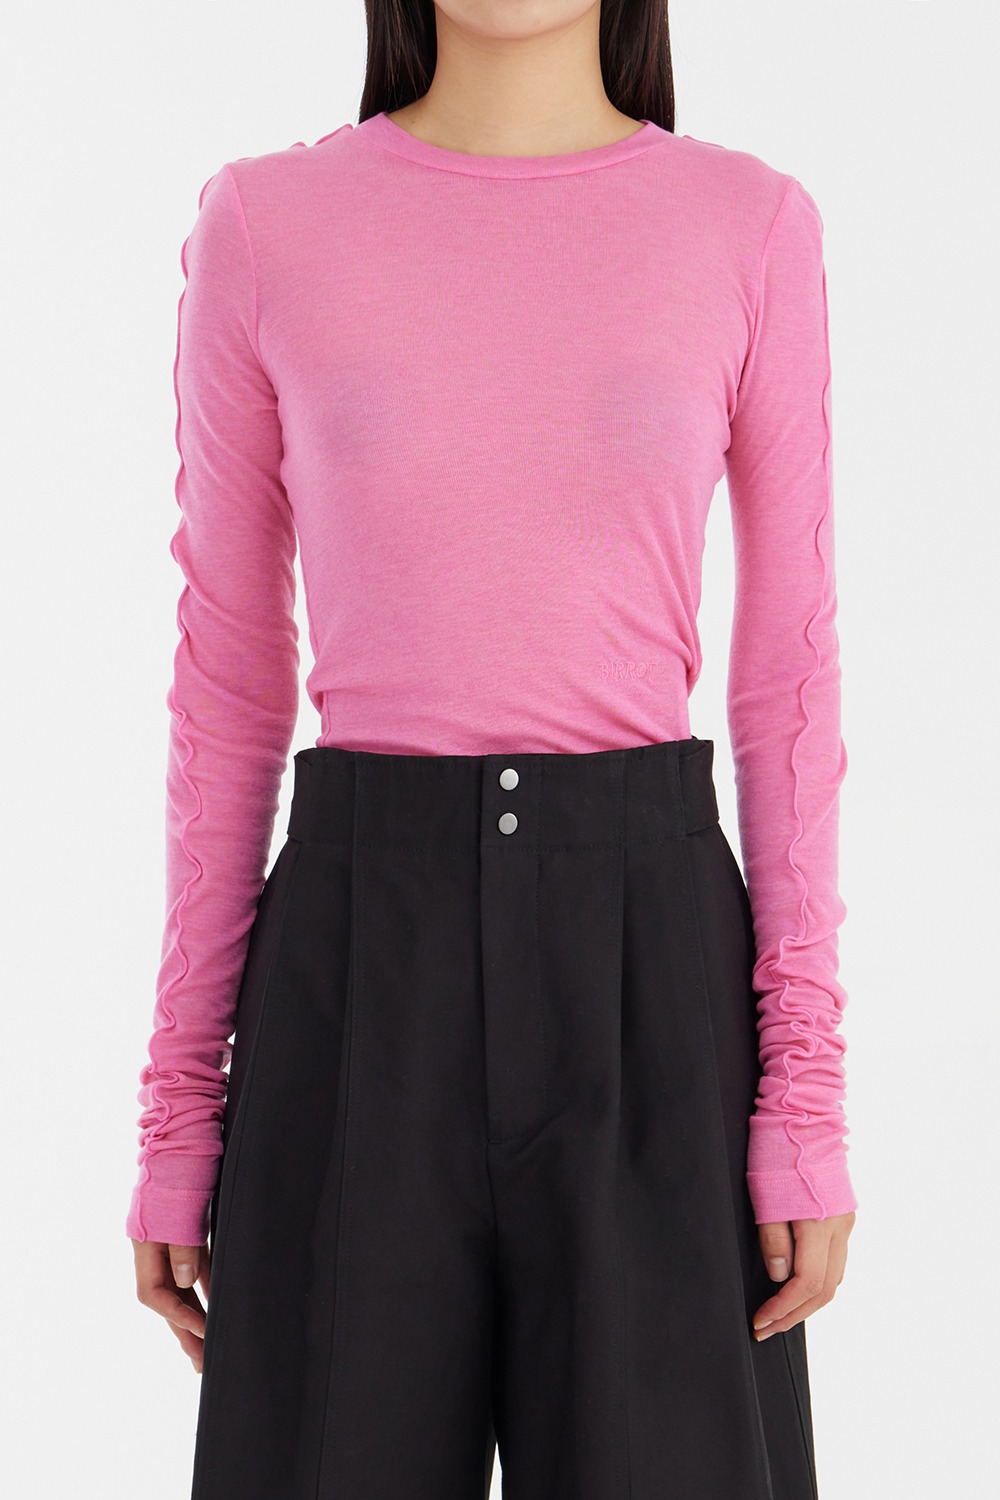 Wool Tencel Top - Pink